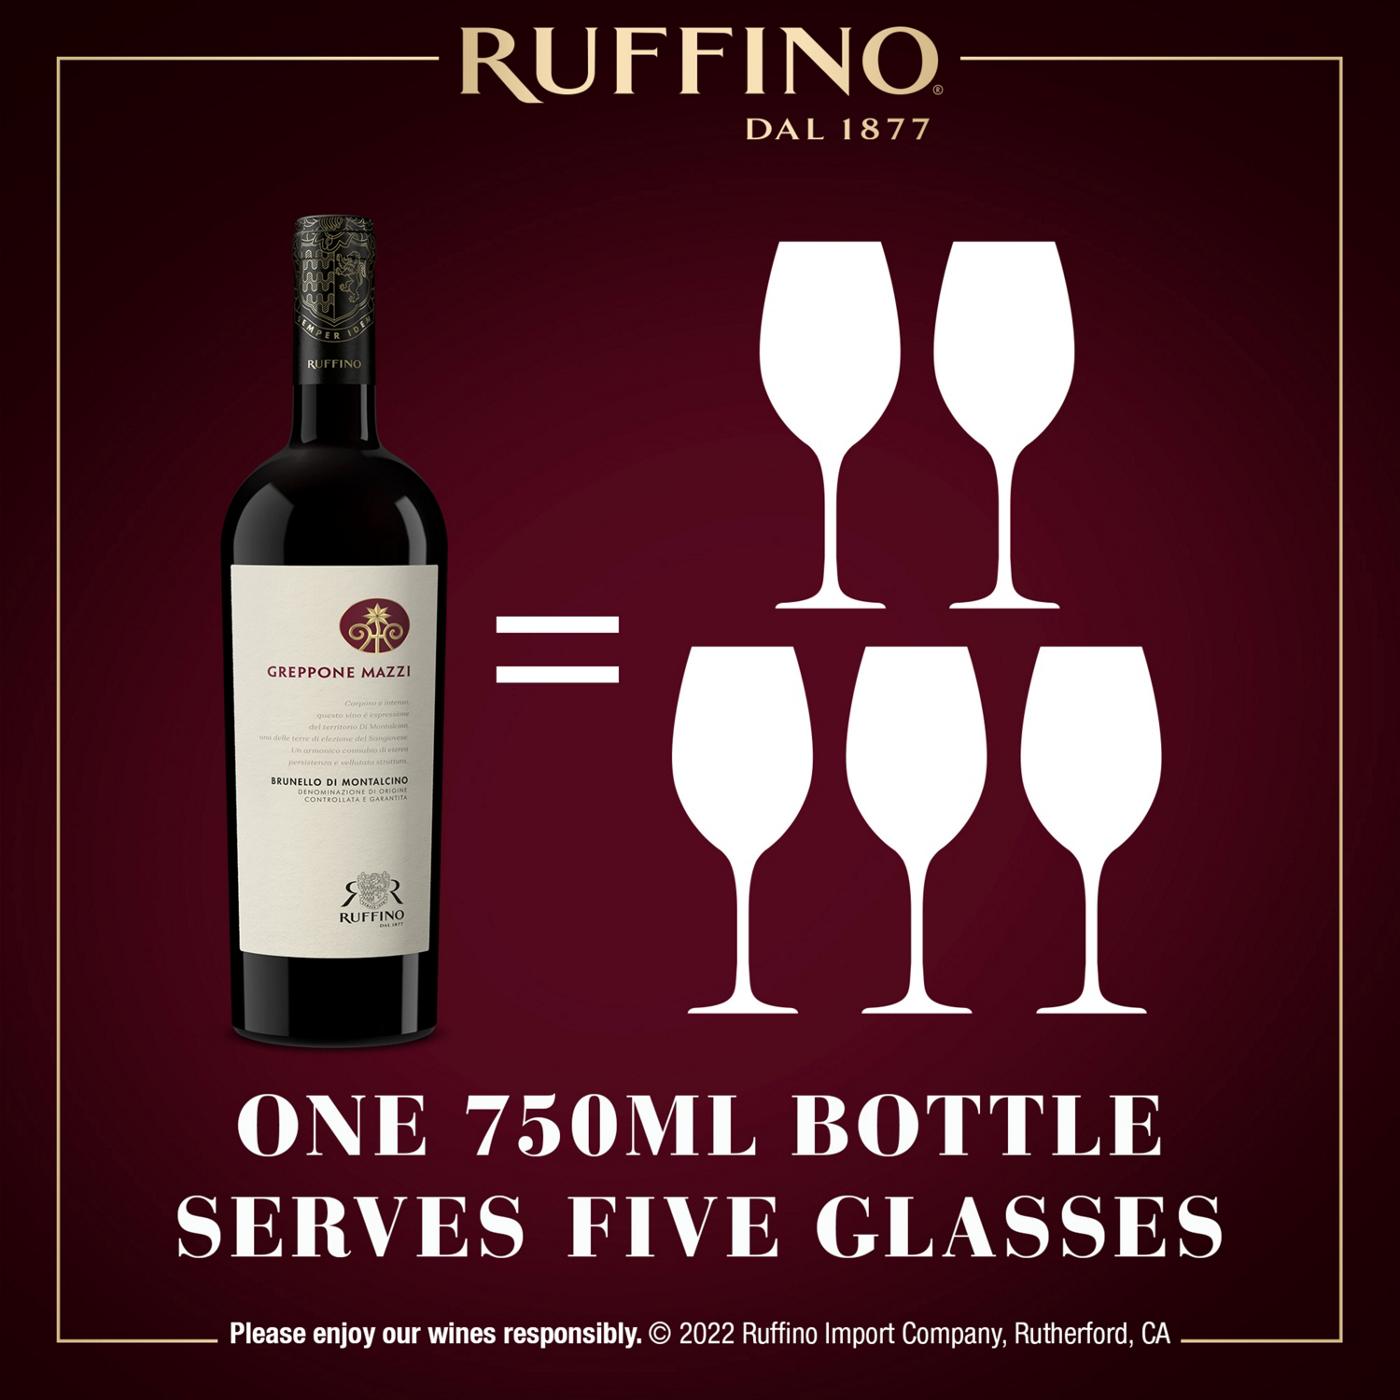 Ruffino Greppone Mazzi Brunello Di Montalcino DOCG Sangiovese Grosso, Italian Red Wine 750 mL Bottle; image 5 of 11